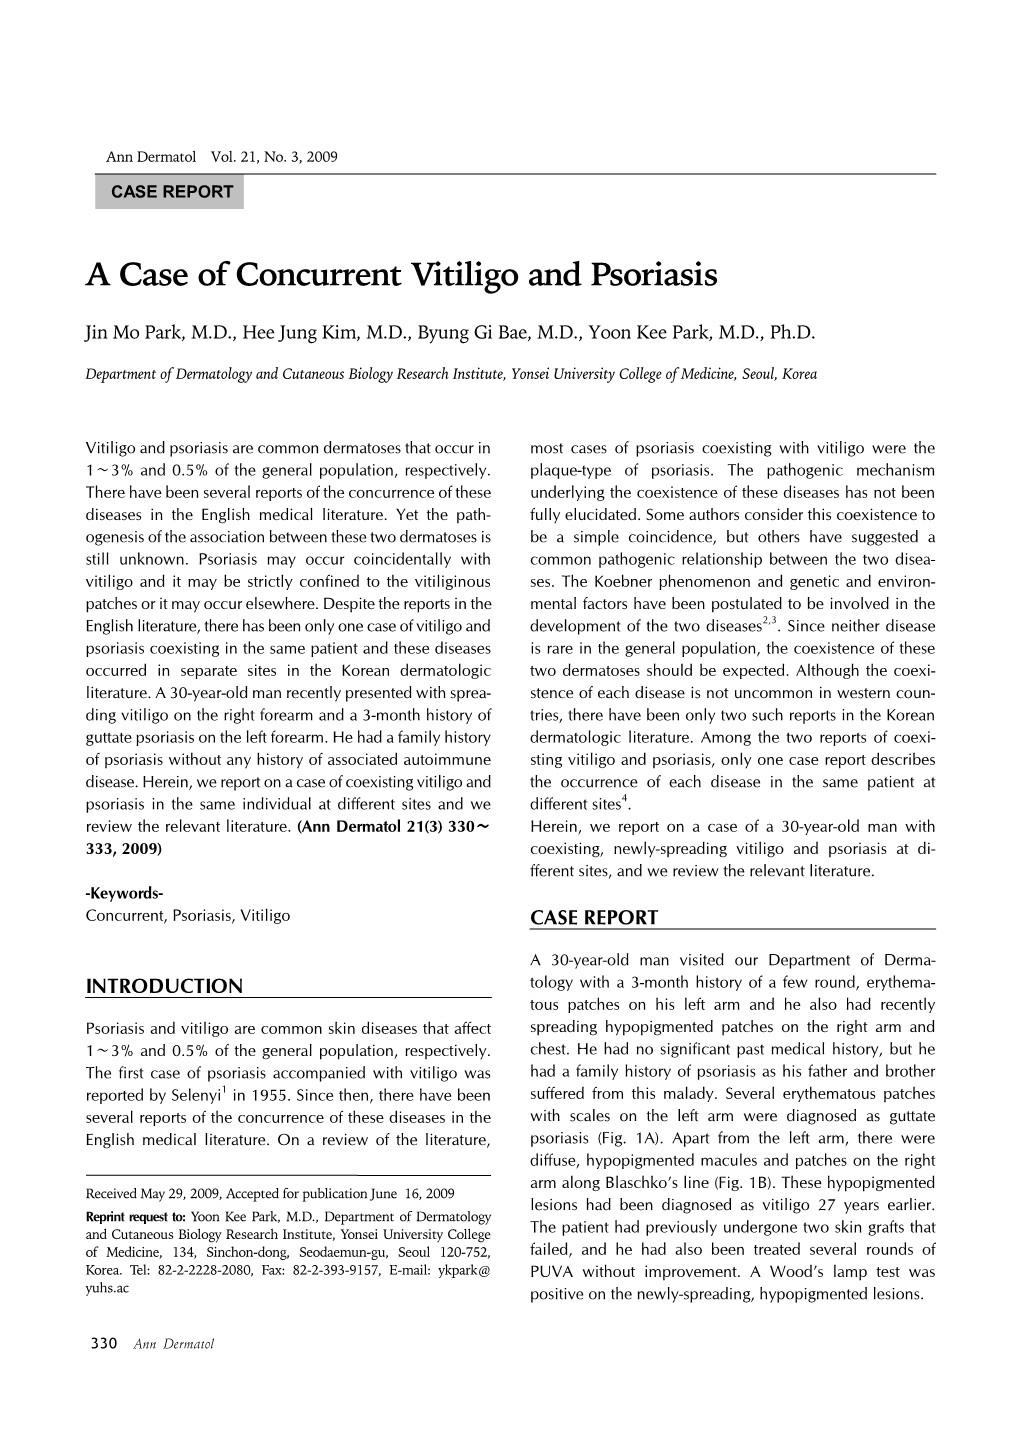 A Case of Concurrent Vitiligo and Psoriasis